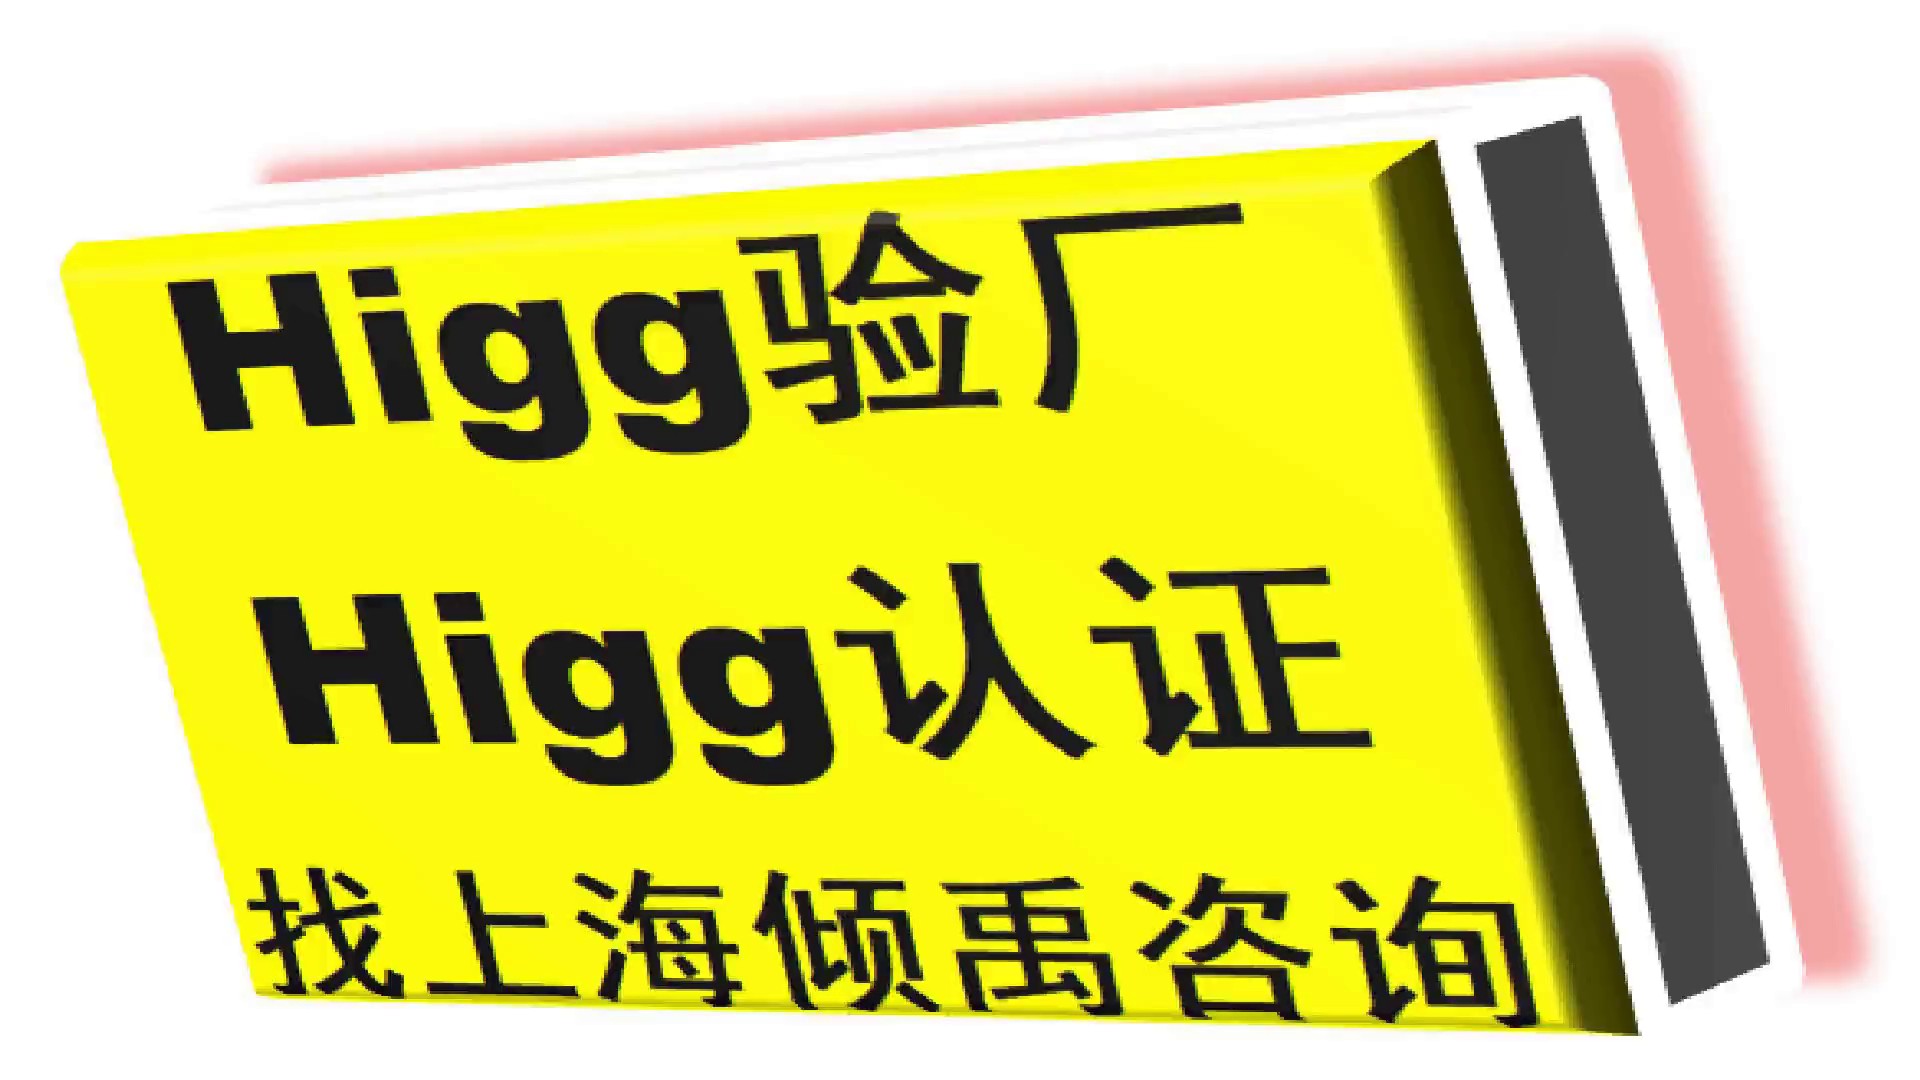 安徽官方推荐Higg FEM验厂热线电话/服务电话/咨询电话,Higg FEM验厂